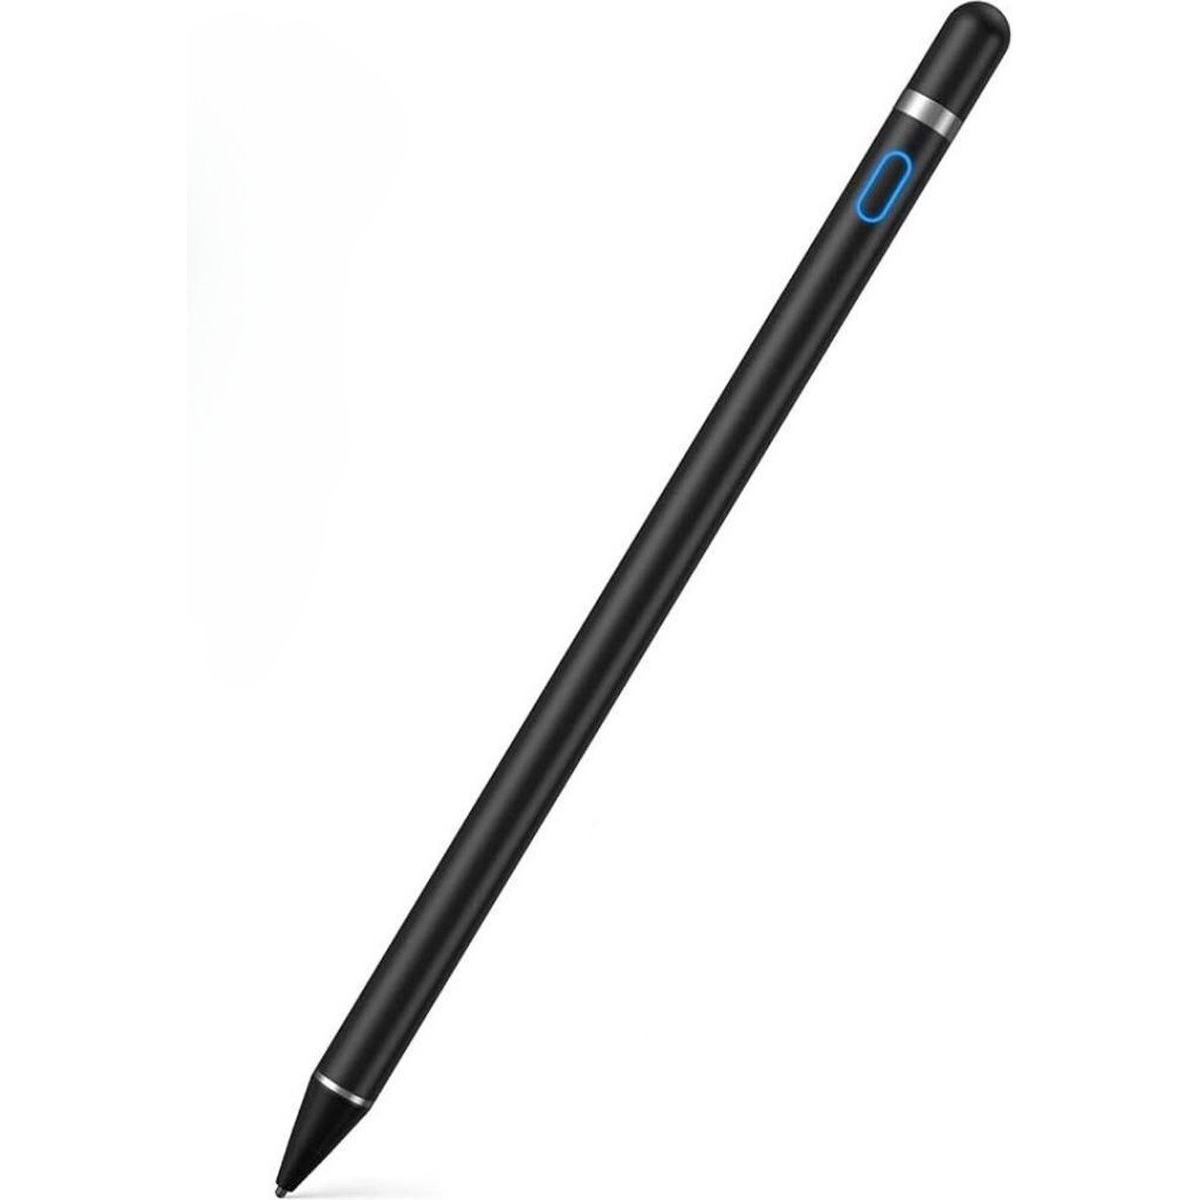 TIKKENS Stylus Schreibfunktion - mit Schwarz Schwarz Eingabestift Stylus Pen | Pen